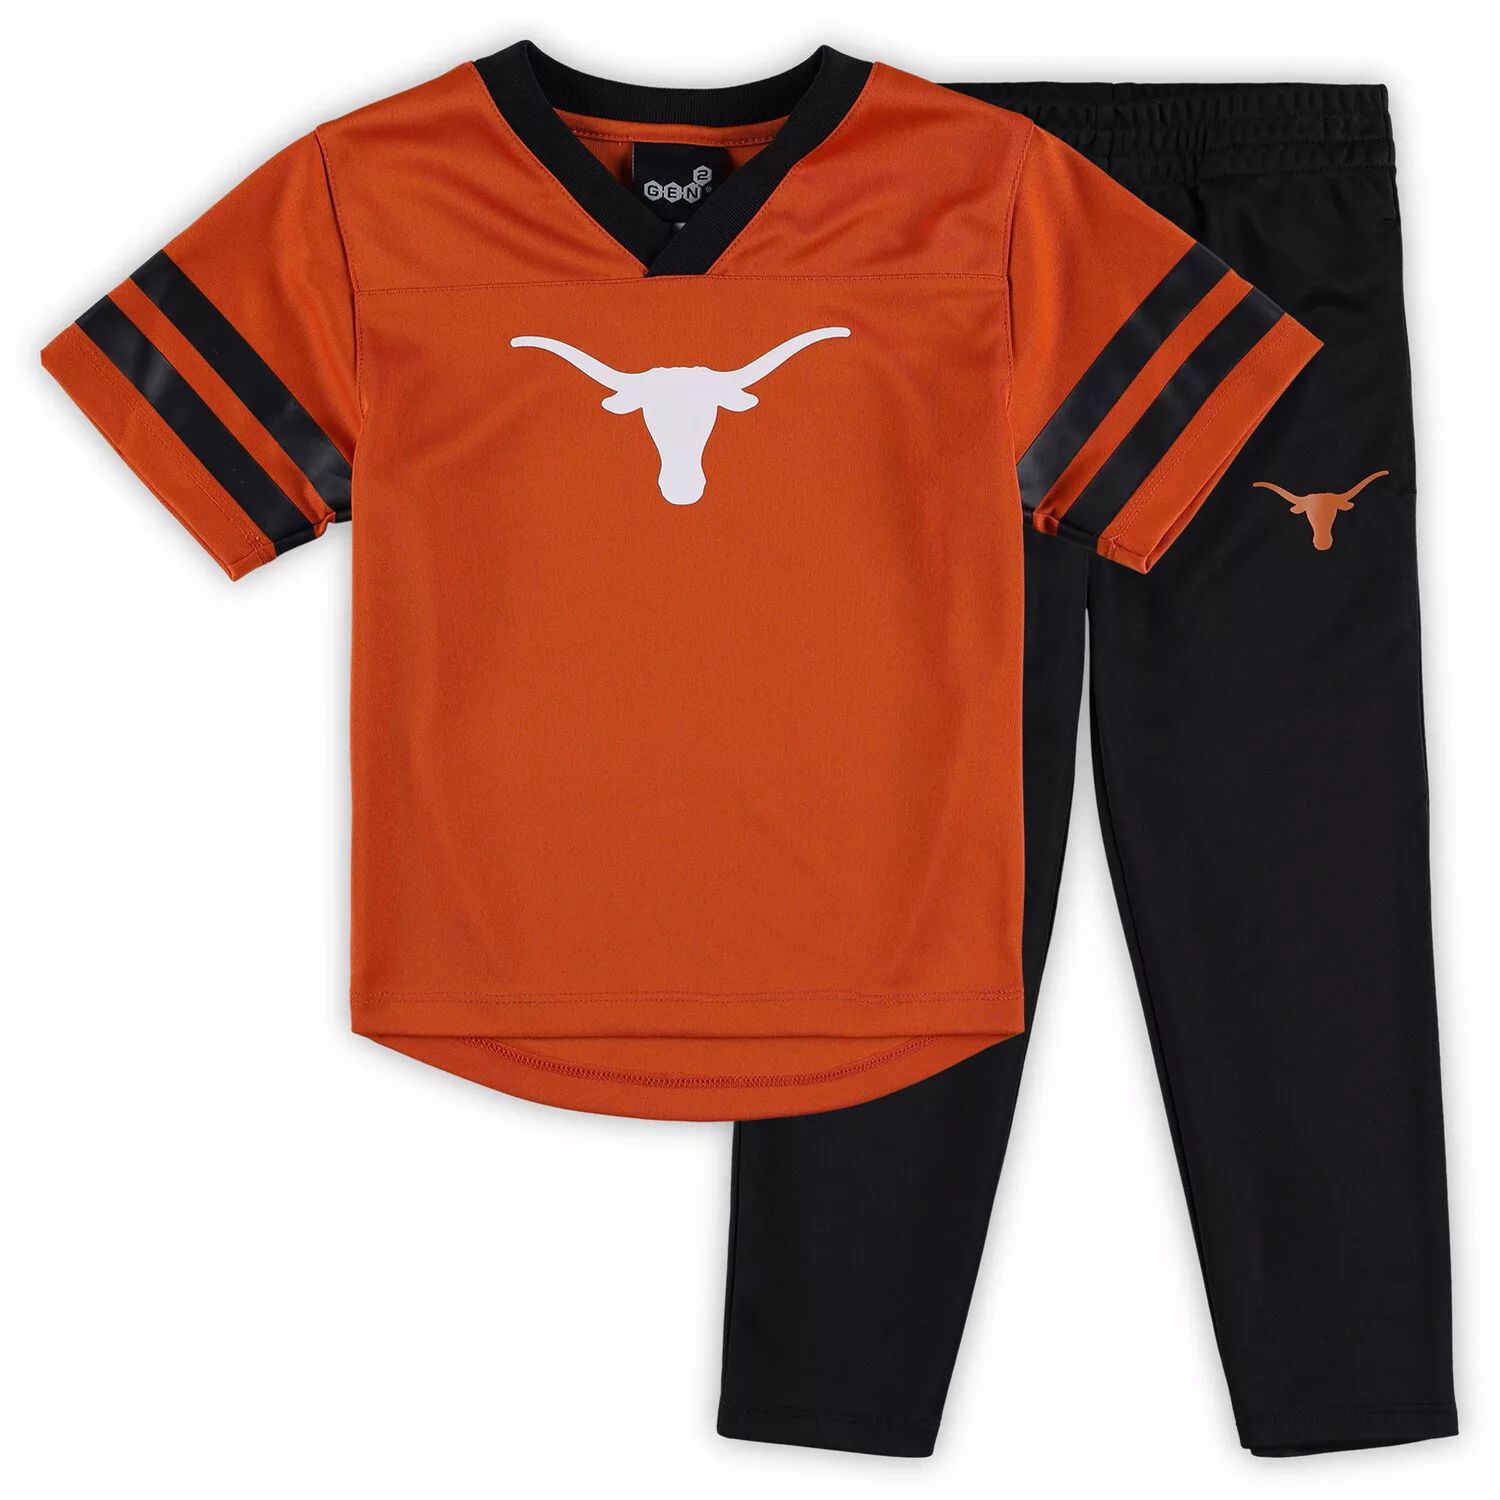 Комплект из джерси и брюк Texas Longhorns Red Zone для дошкольников оранжевого/черного цвета Outerstuff